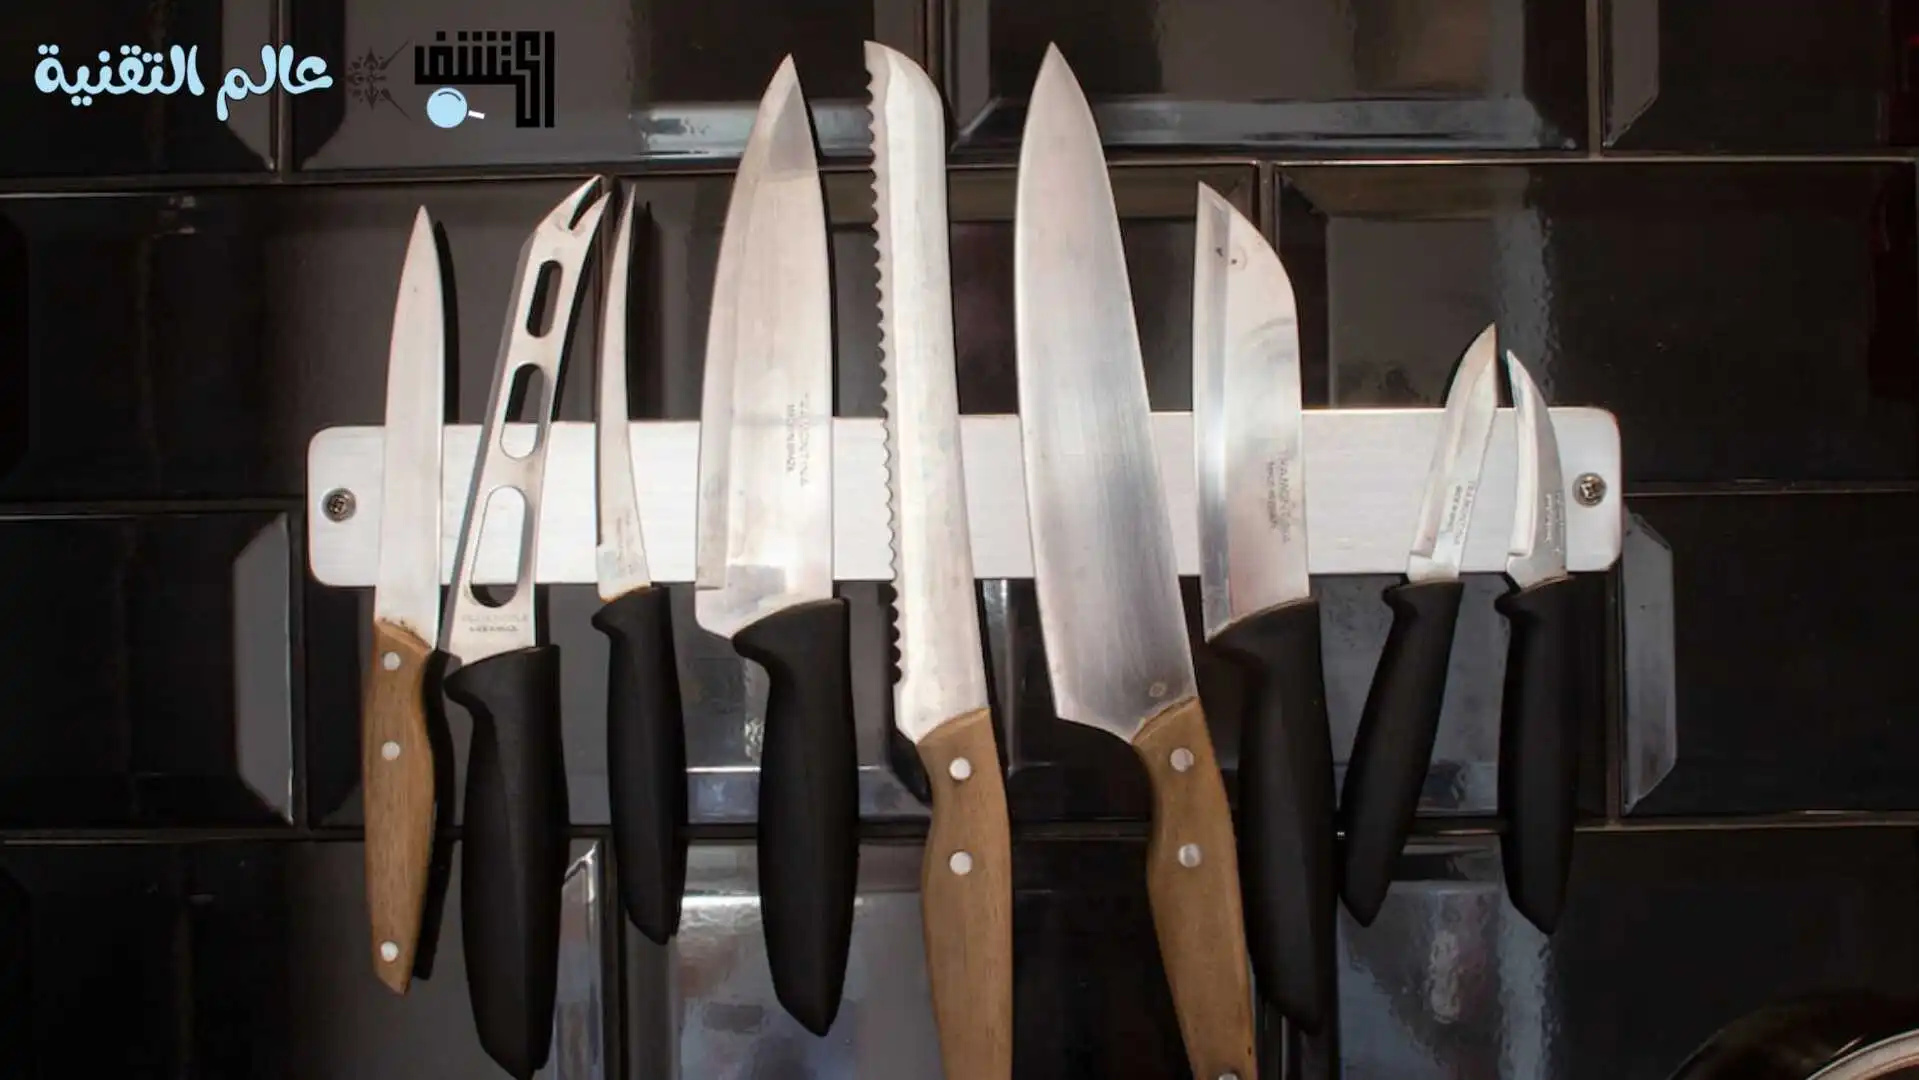 طريقة سن السكاكين في المنزل بأدوات في المطبخ... النتيجة رقم 1 هتبهرك!